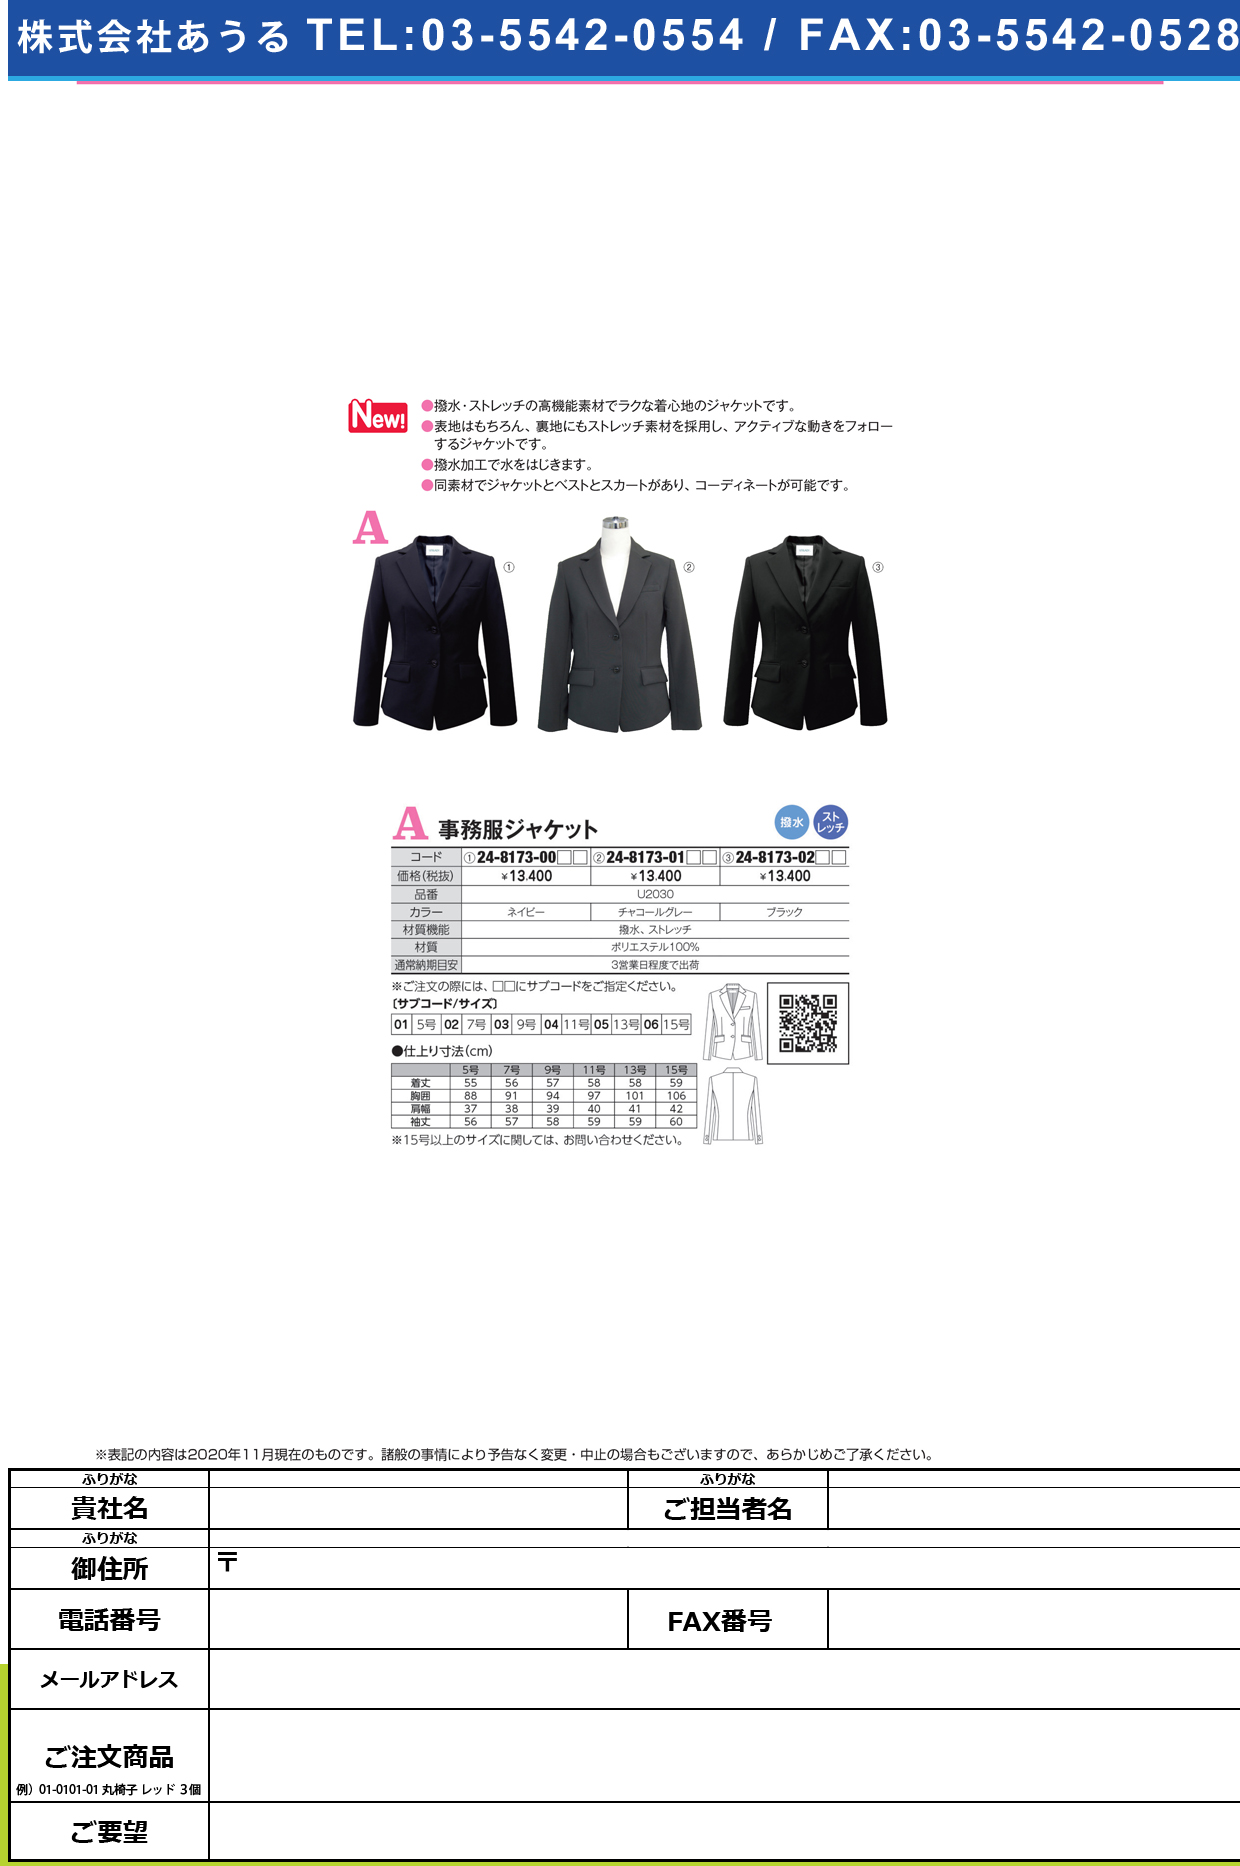 事務服ジャケット U2030(ブラック)U2030(ﾌﾞﾗｯｸ)１５(24-8173-02-06)【ヤギコーポレーション】(販売単位:1)